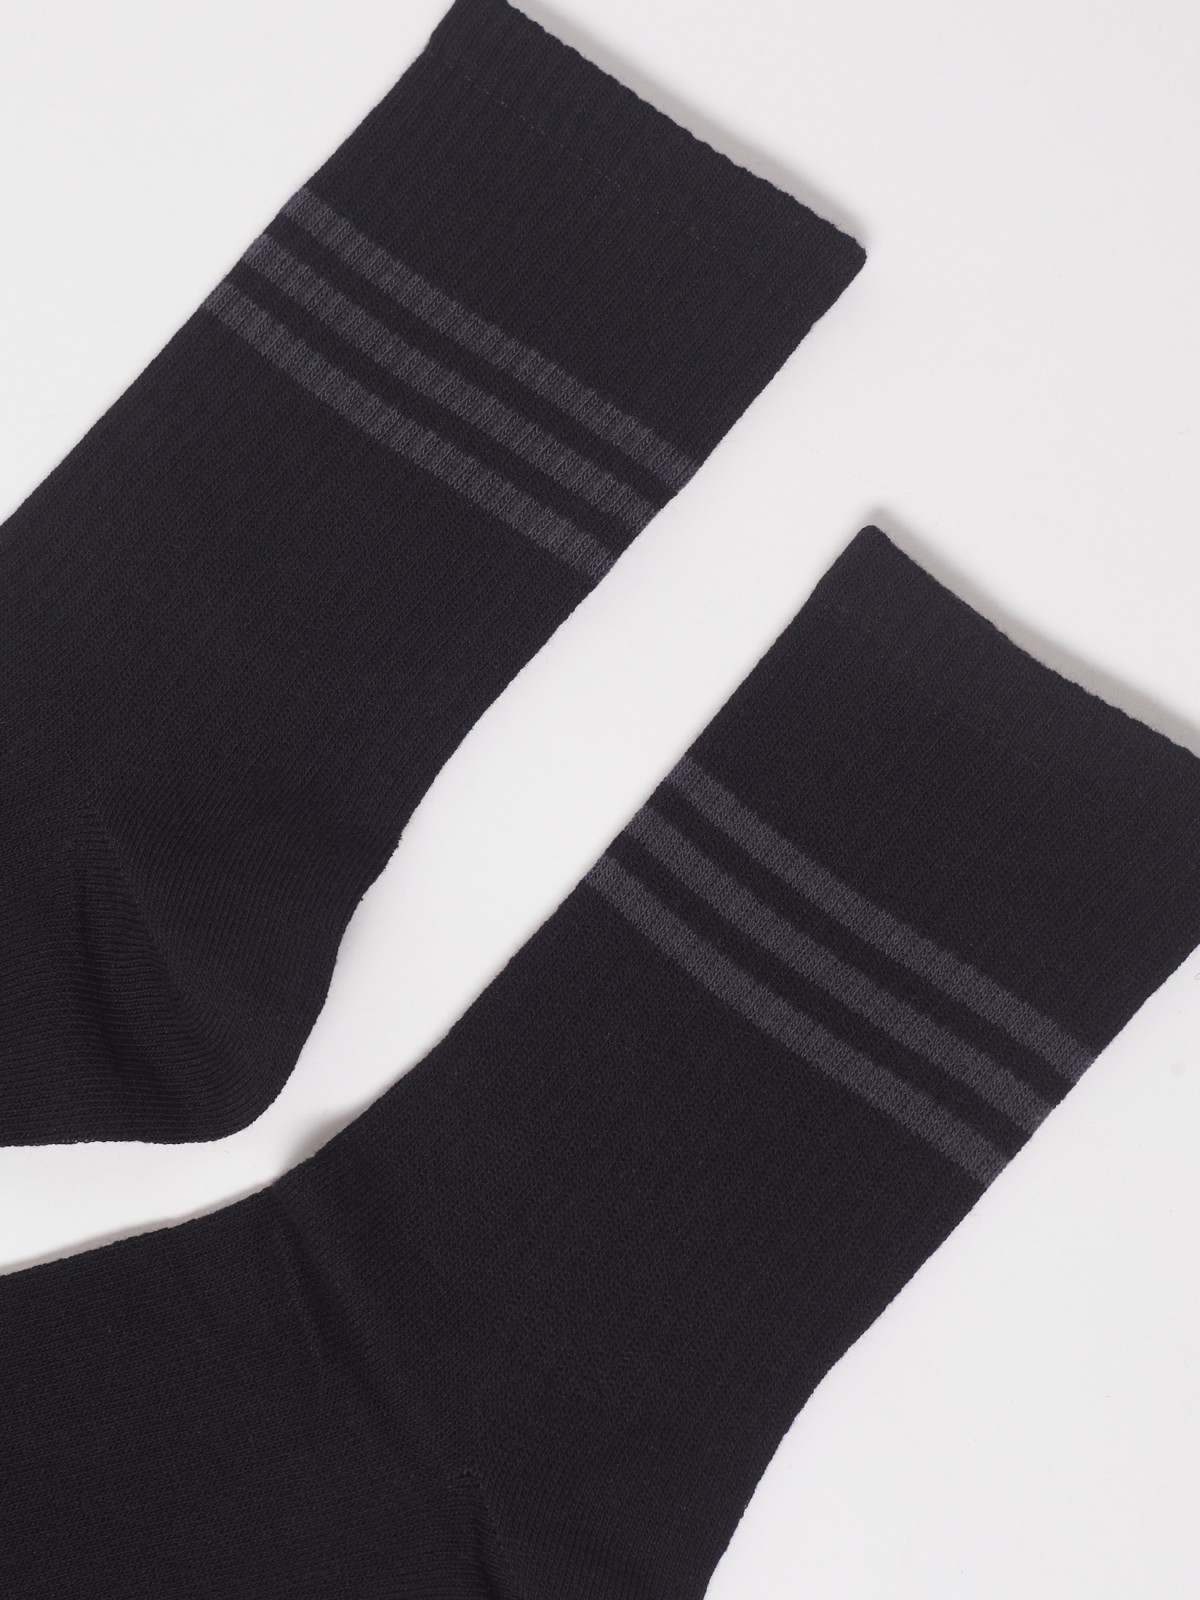 Набор высоких носков (3 пары в комплекте) zolla 01311998J185, цвет черный, размер 25-27 - фото 4